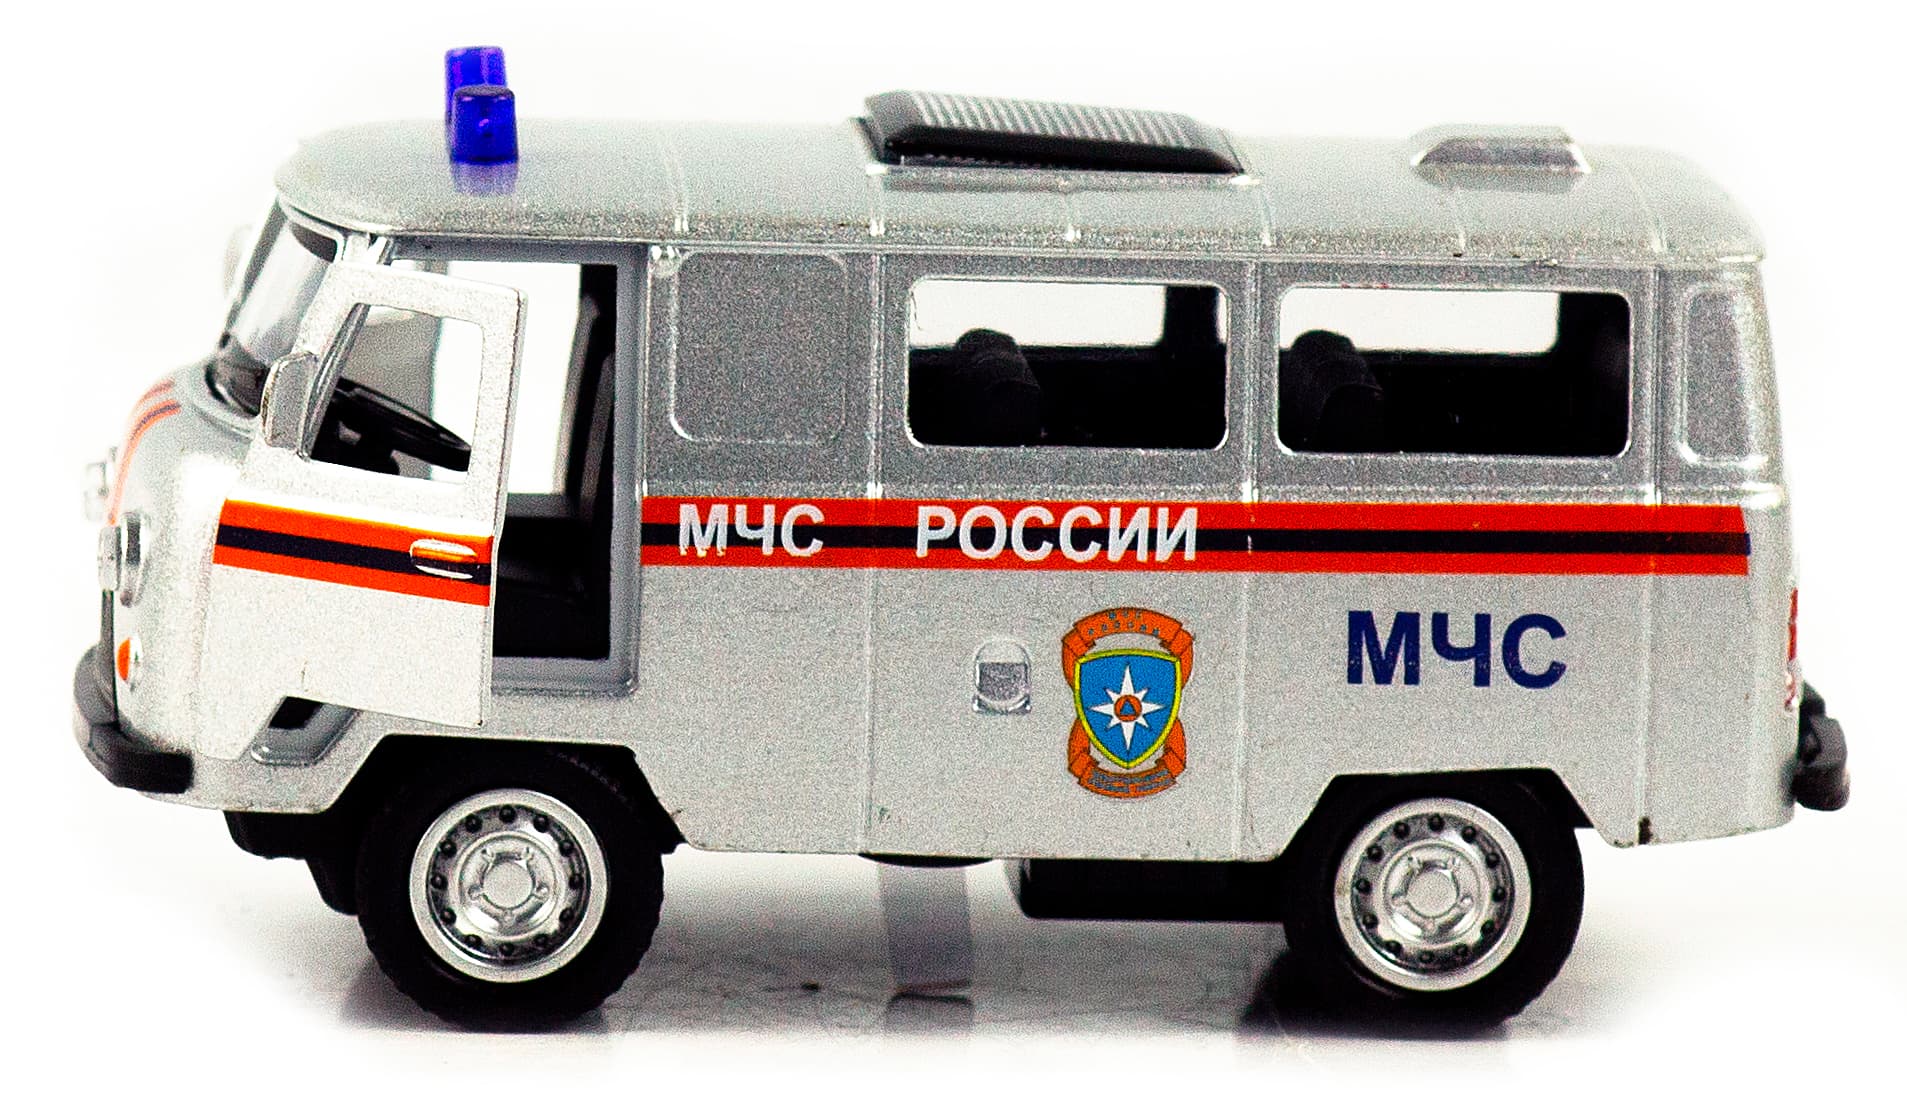 Металлическая машинка 1:32 «Микроавтобус УАЗ Буханка 39625: Служебный» 12 см. 189P-12D, инерционная, свет, звук / МЧС